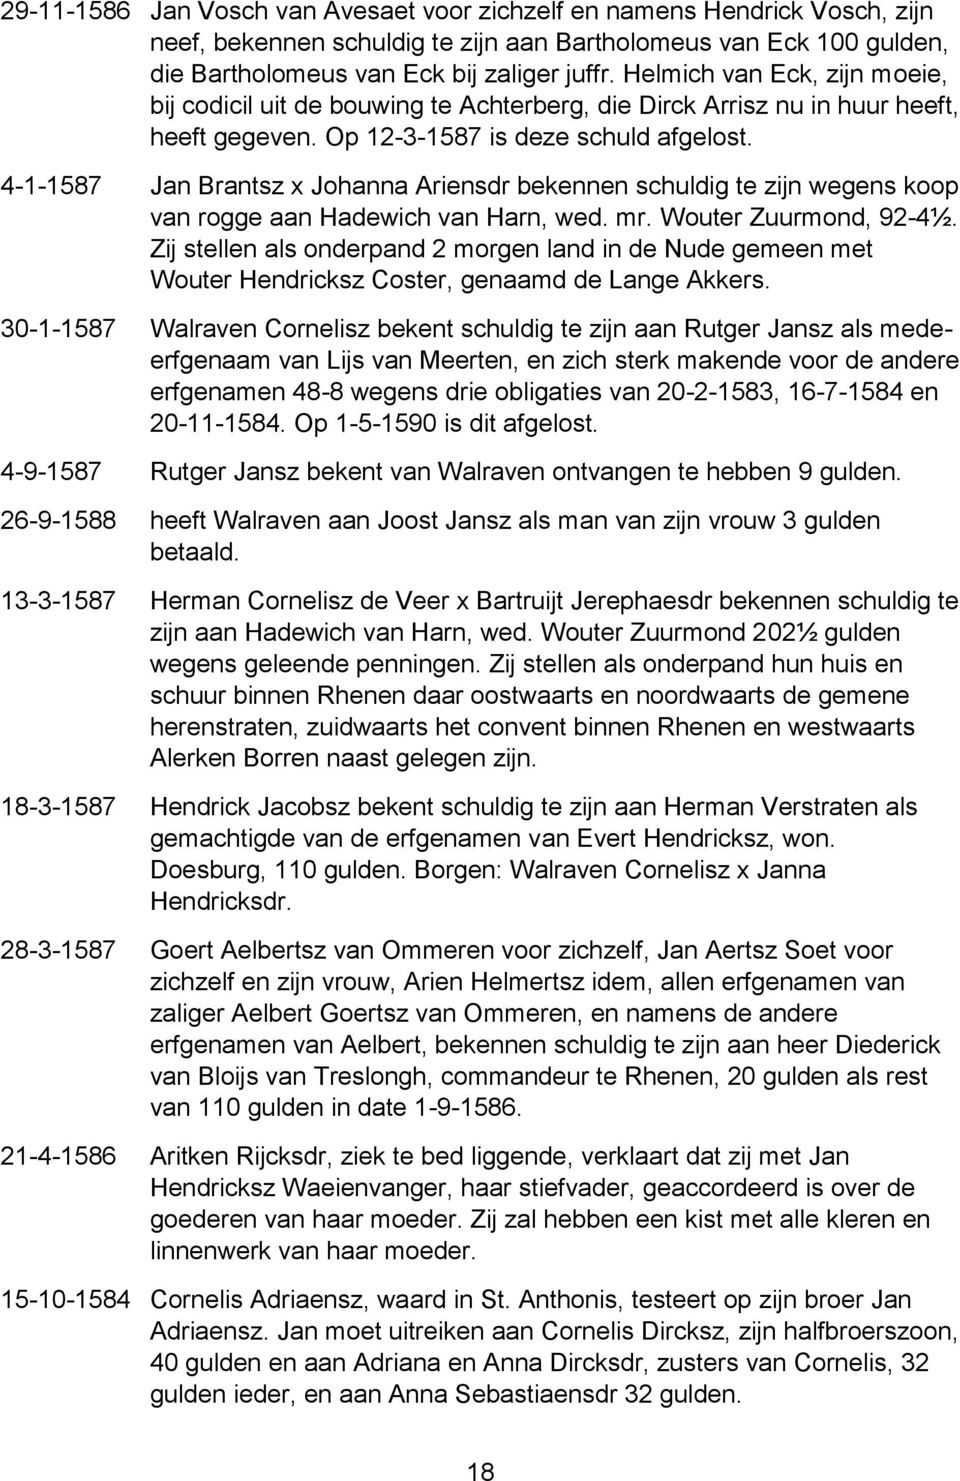 4-1-1587 Jan Brantsz x Johanna Ariensdr bekennen schuldig te zijn wegens koop van rogge aan Hadewich van Harn, wed. mr. Wouter Zuurmond, 92-4½.